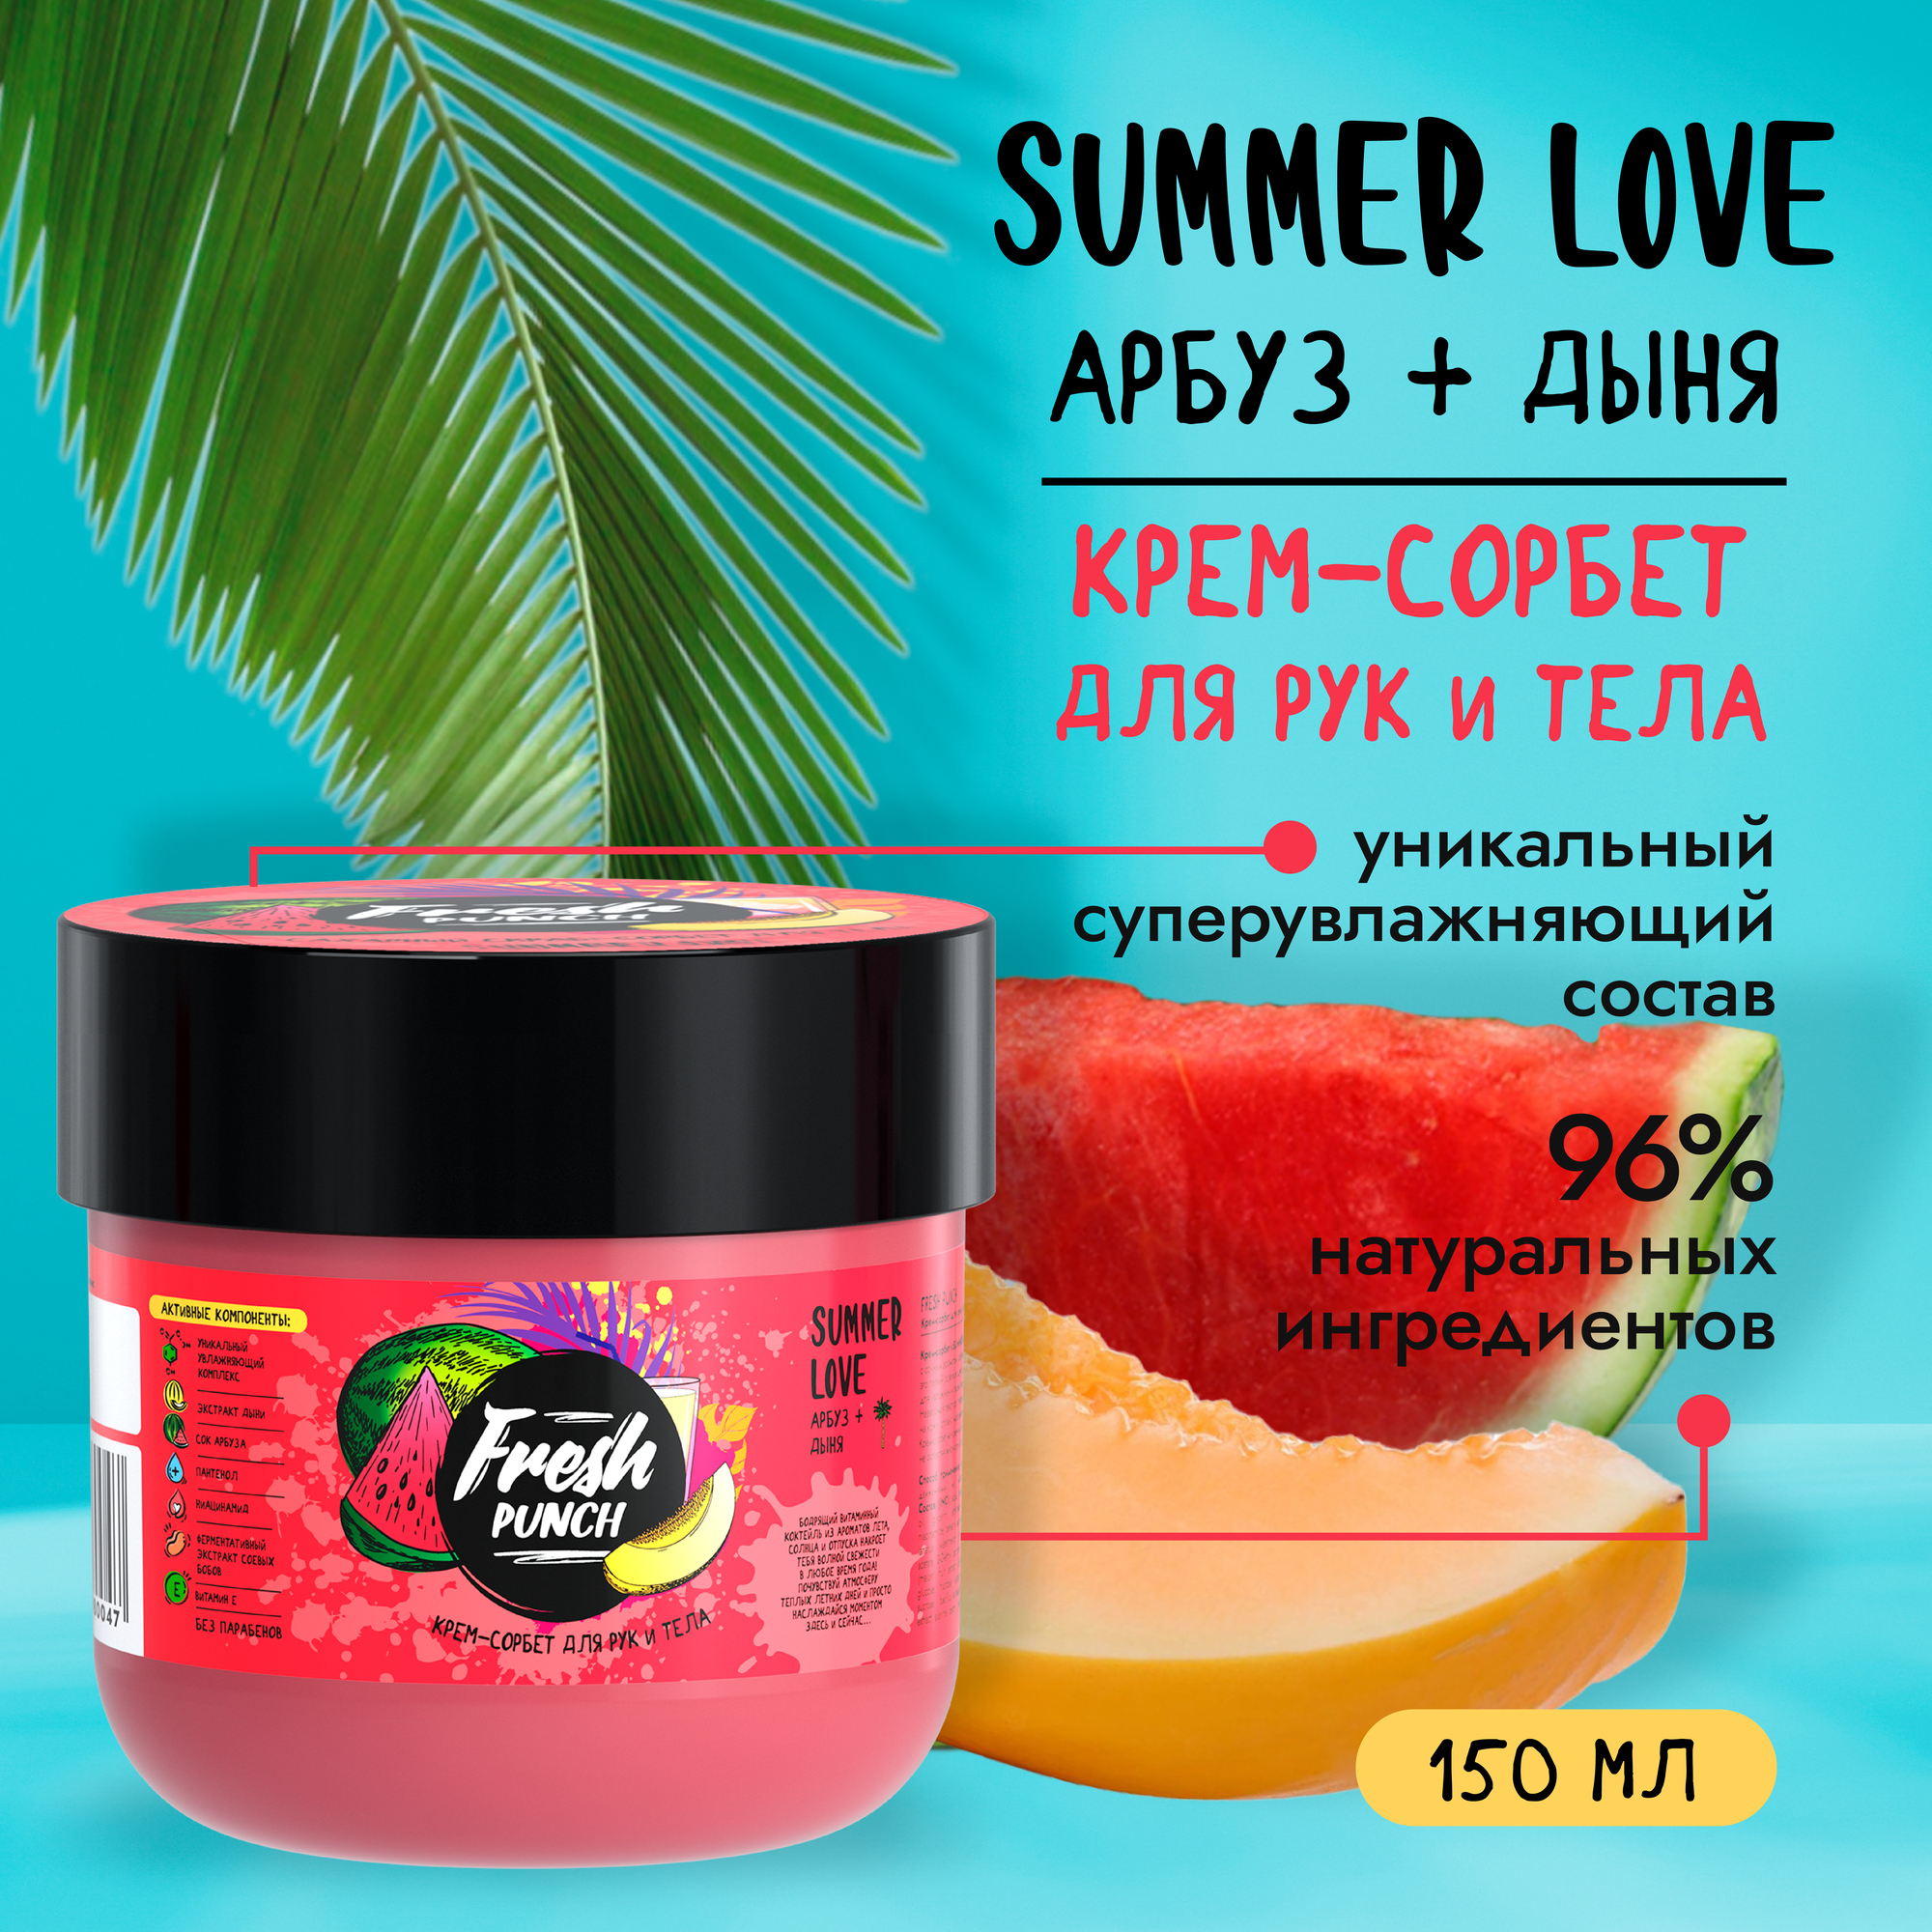 Крем-сорбет для рук и тела " Summer Love" арбуз-дыня Fresh Punch 150мл